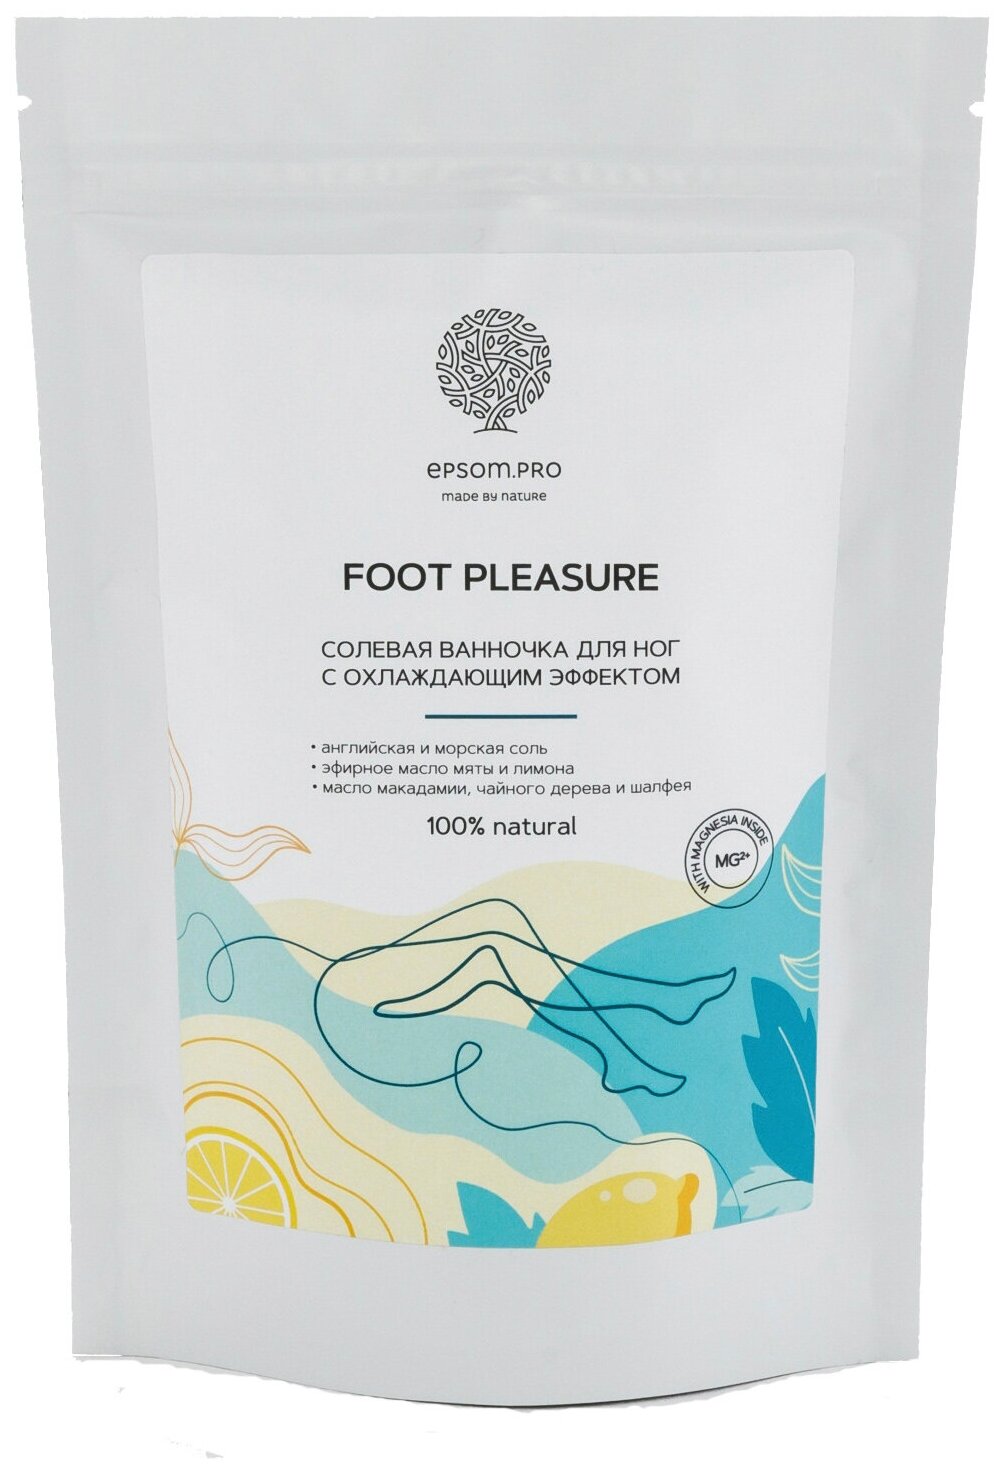 Ванночка SALT OF THE EARTH Foot Pleasure с эфирным маслом мяты и лимона для ног, 400 г